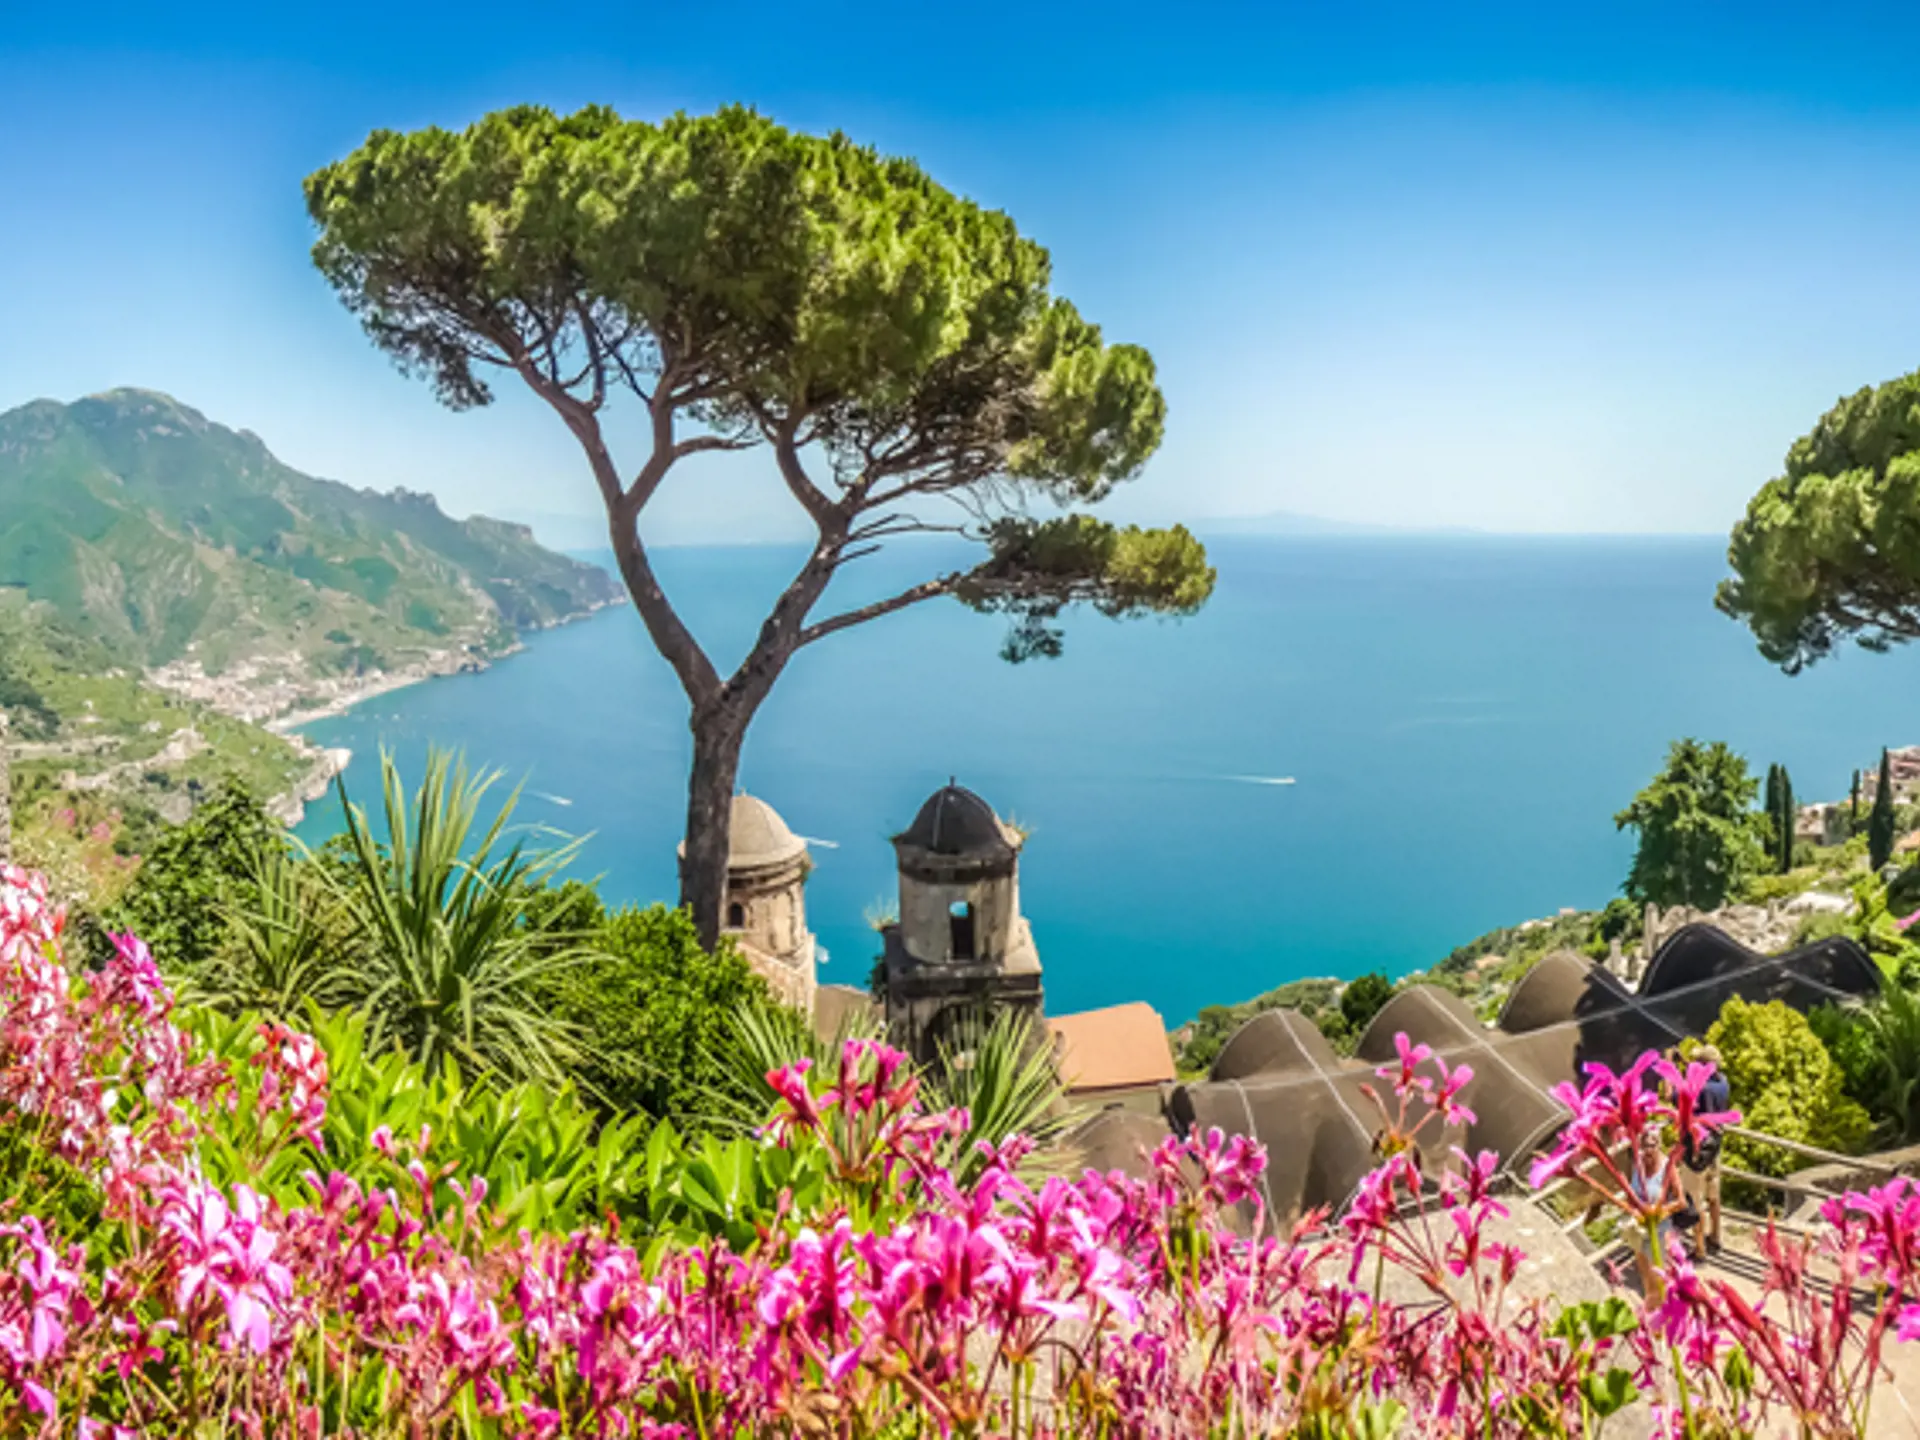 Amalfikusten är ett av de vackraste områdena i södra Italien